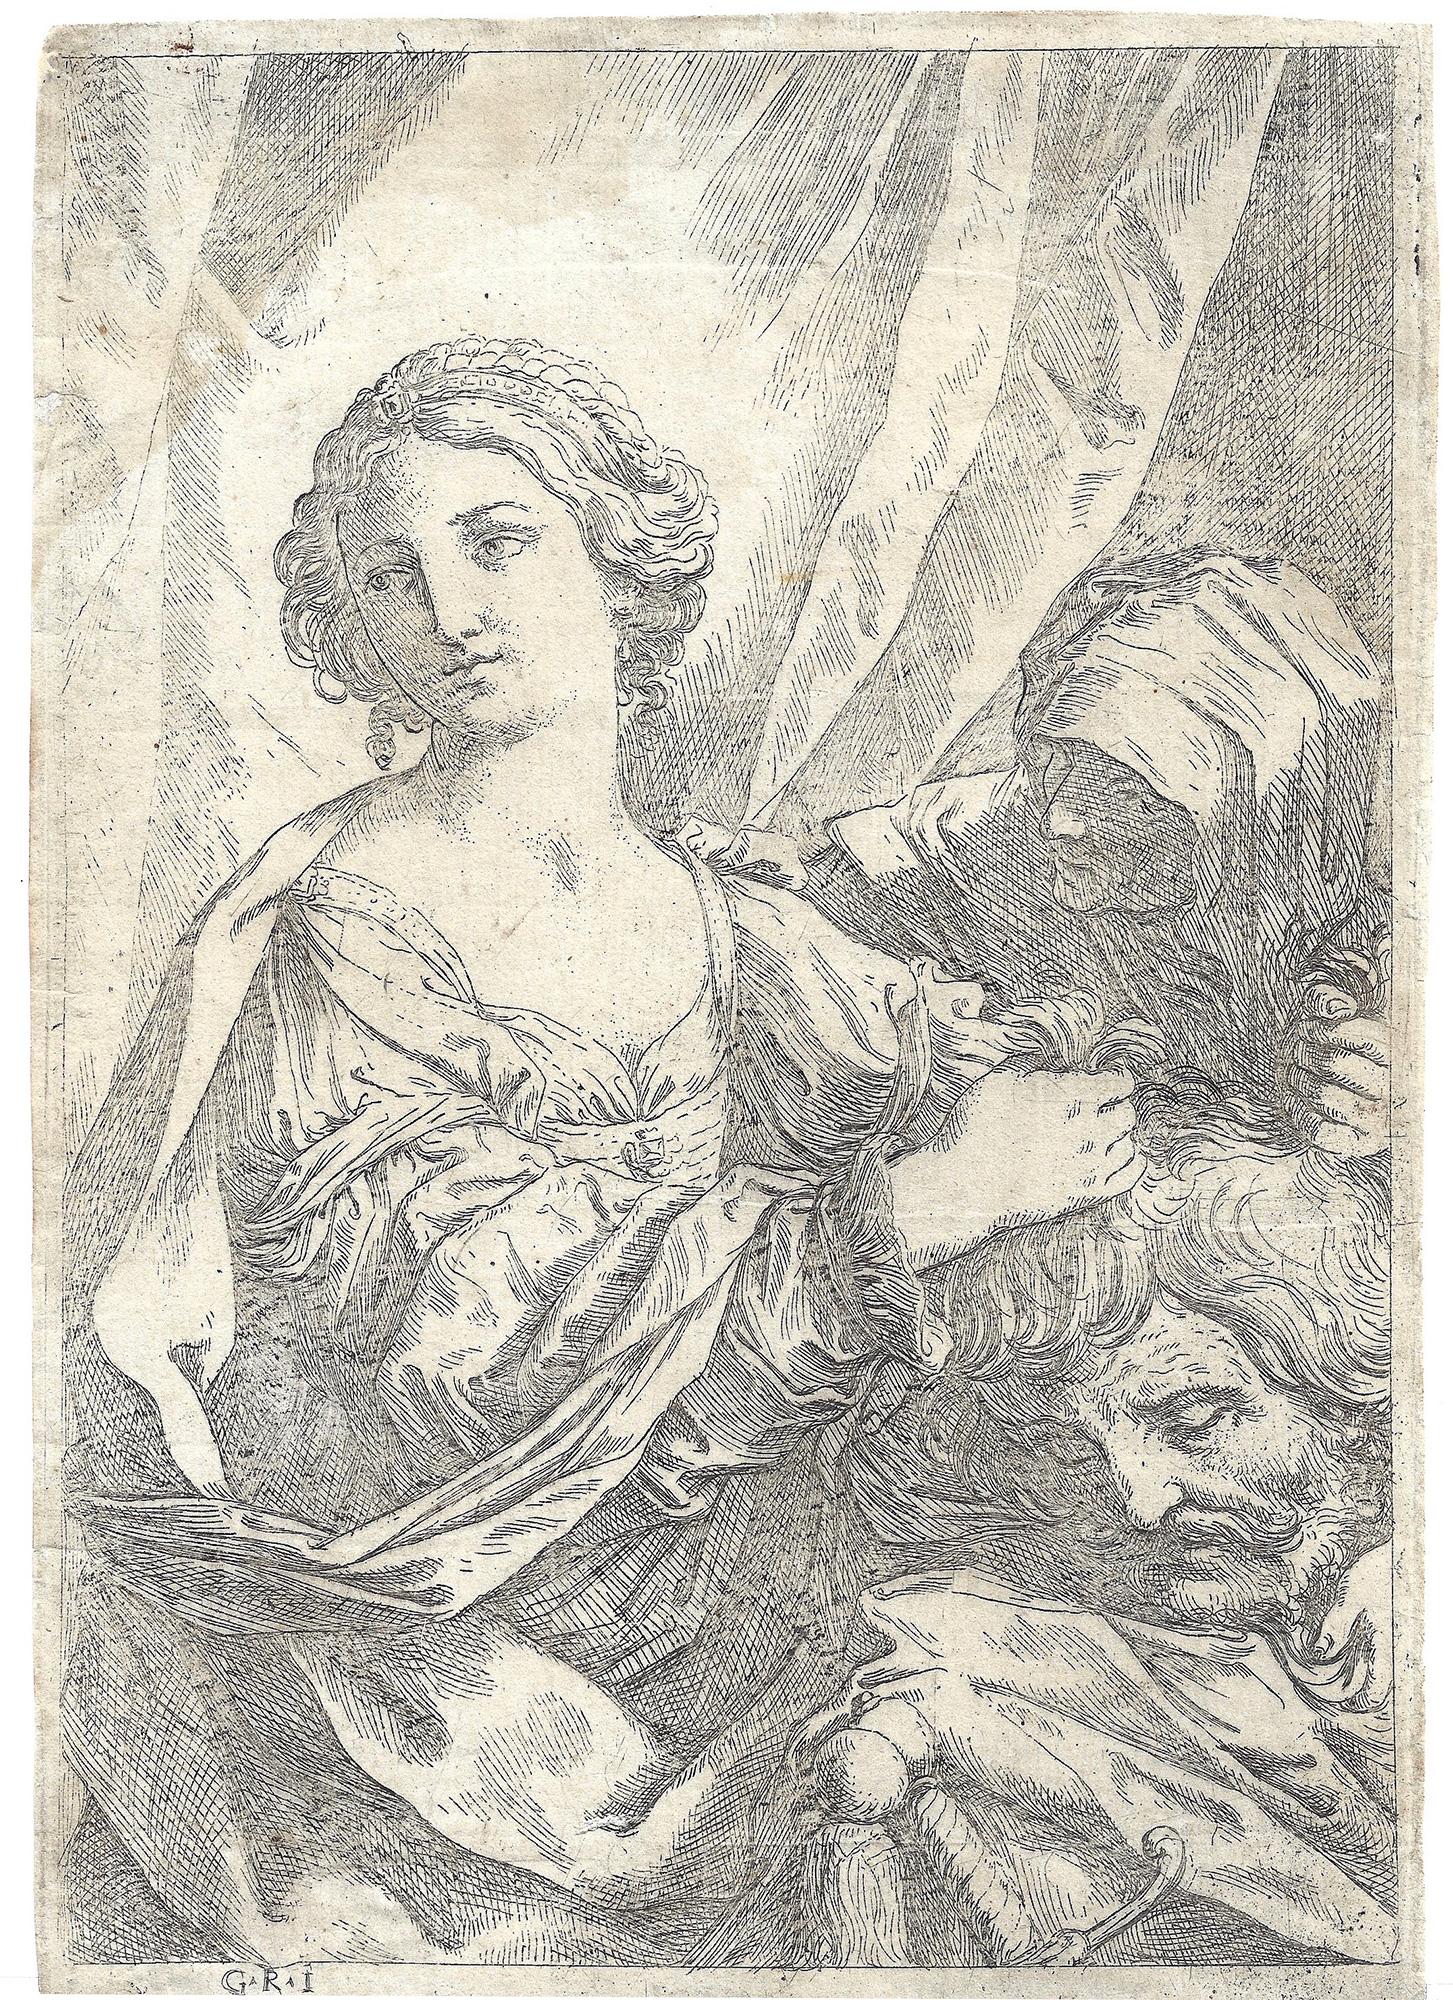 Judith, die den Kopf von Holofernes bei den Haaren fasst und nach links schaut, und eine alte Frau zur Rechten. um 1640
Radierung auf cremefarbenem Bütten mit Foolscap-Wasserzeichen, 254 x 177 mm (10 x 7 Zoll), dünnrandig. In gutem Zustand mit